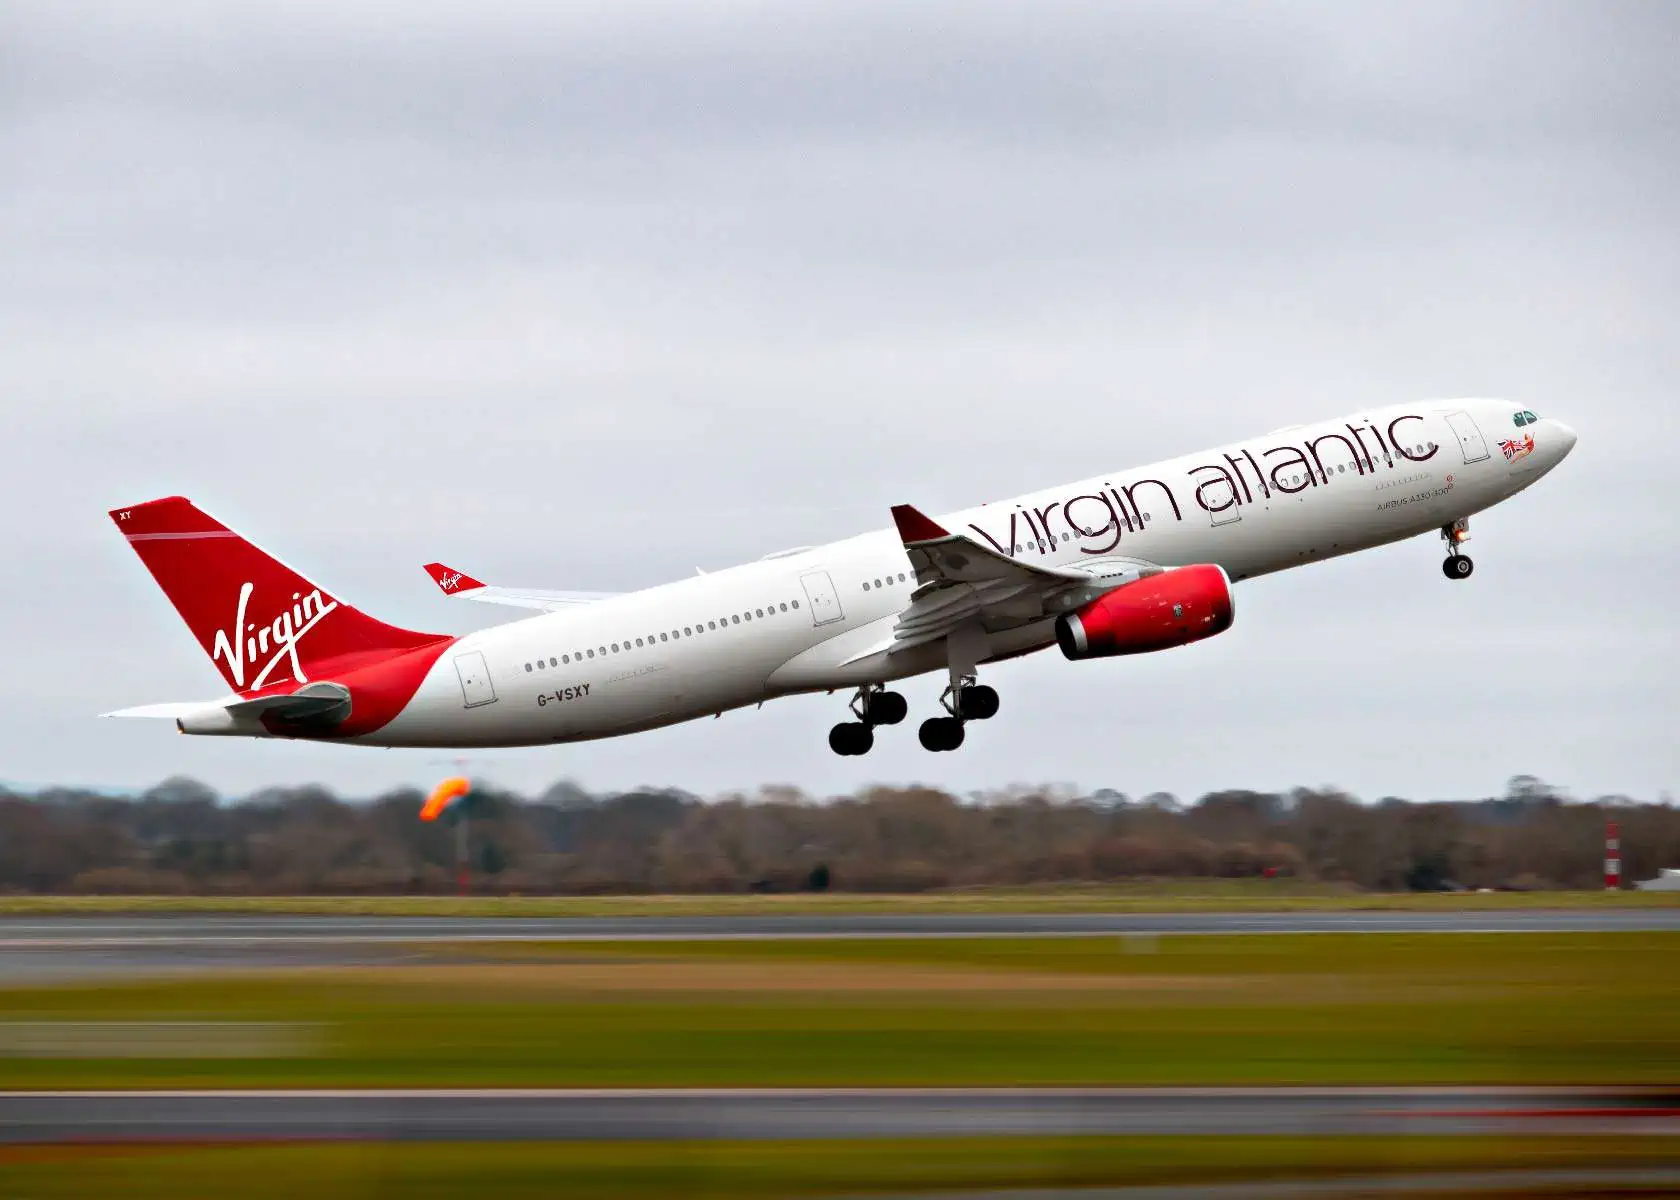 Aerolinea Britanica Virgin Atlantic reanudara vuelos a la Habana